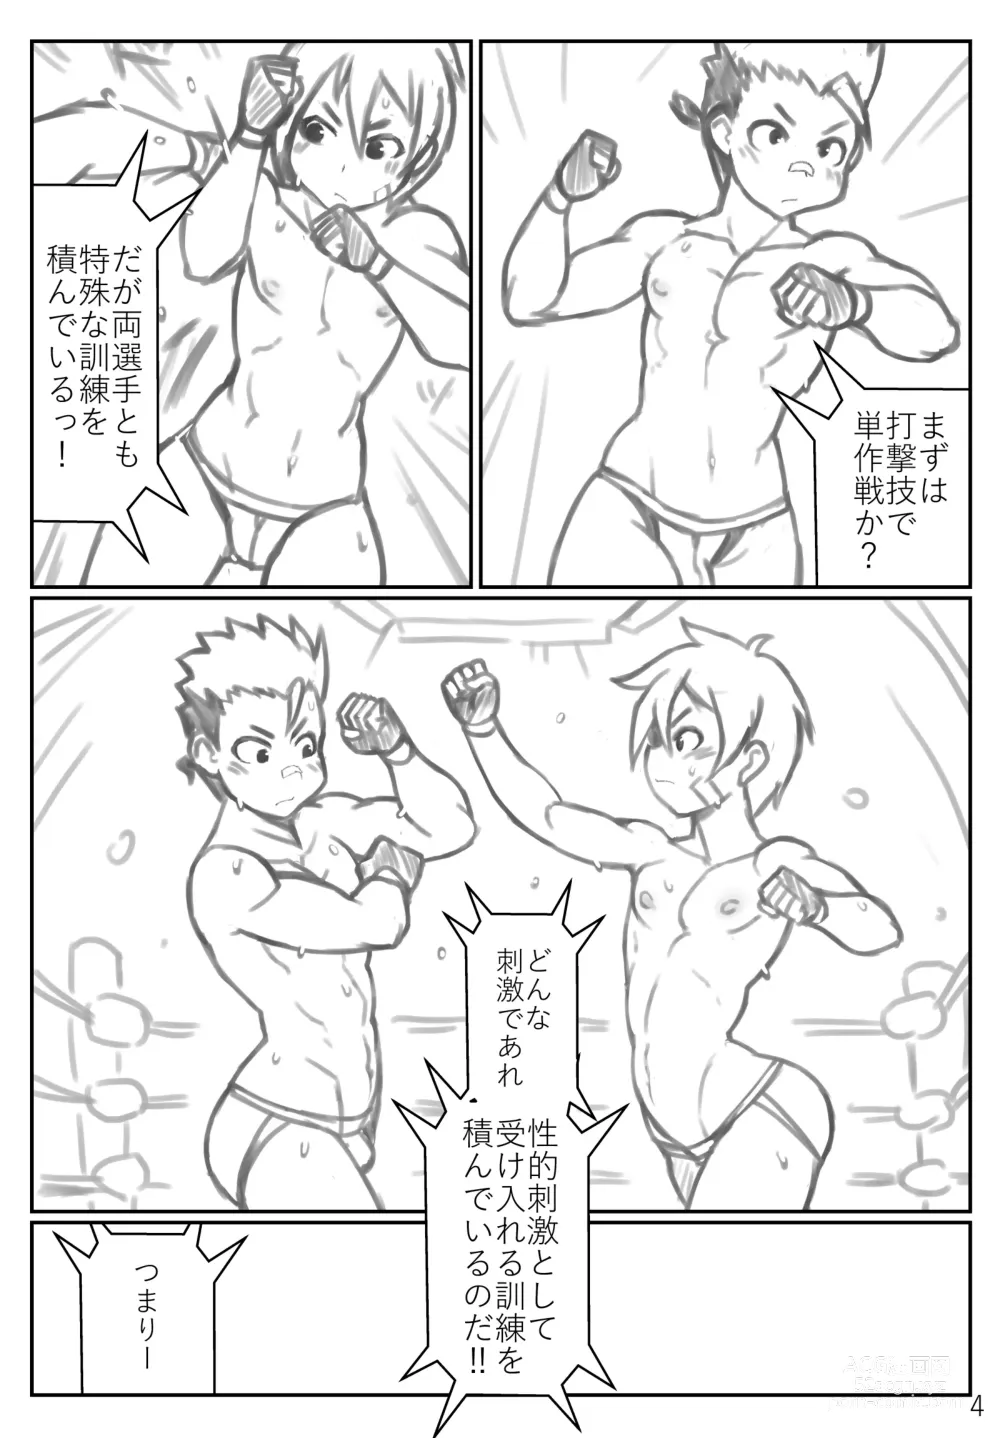 Page 4 of doujinshi Puroresu ♂ no youna nanika